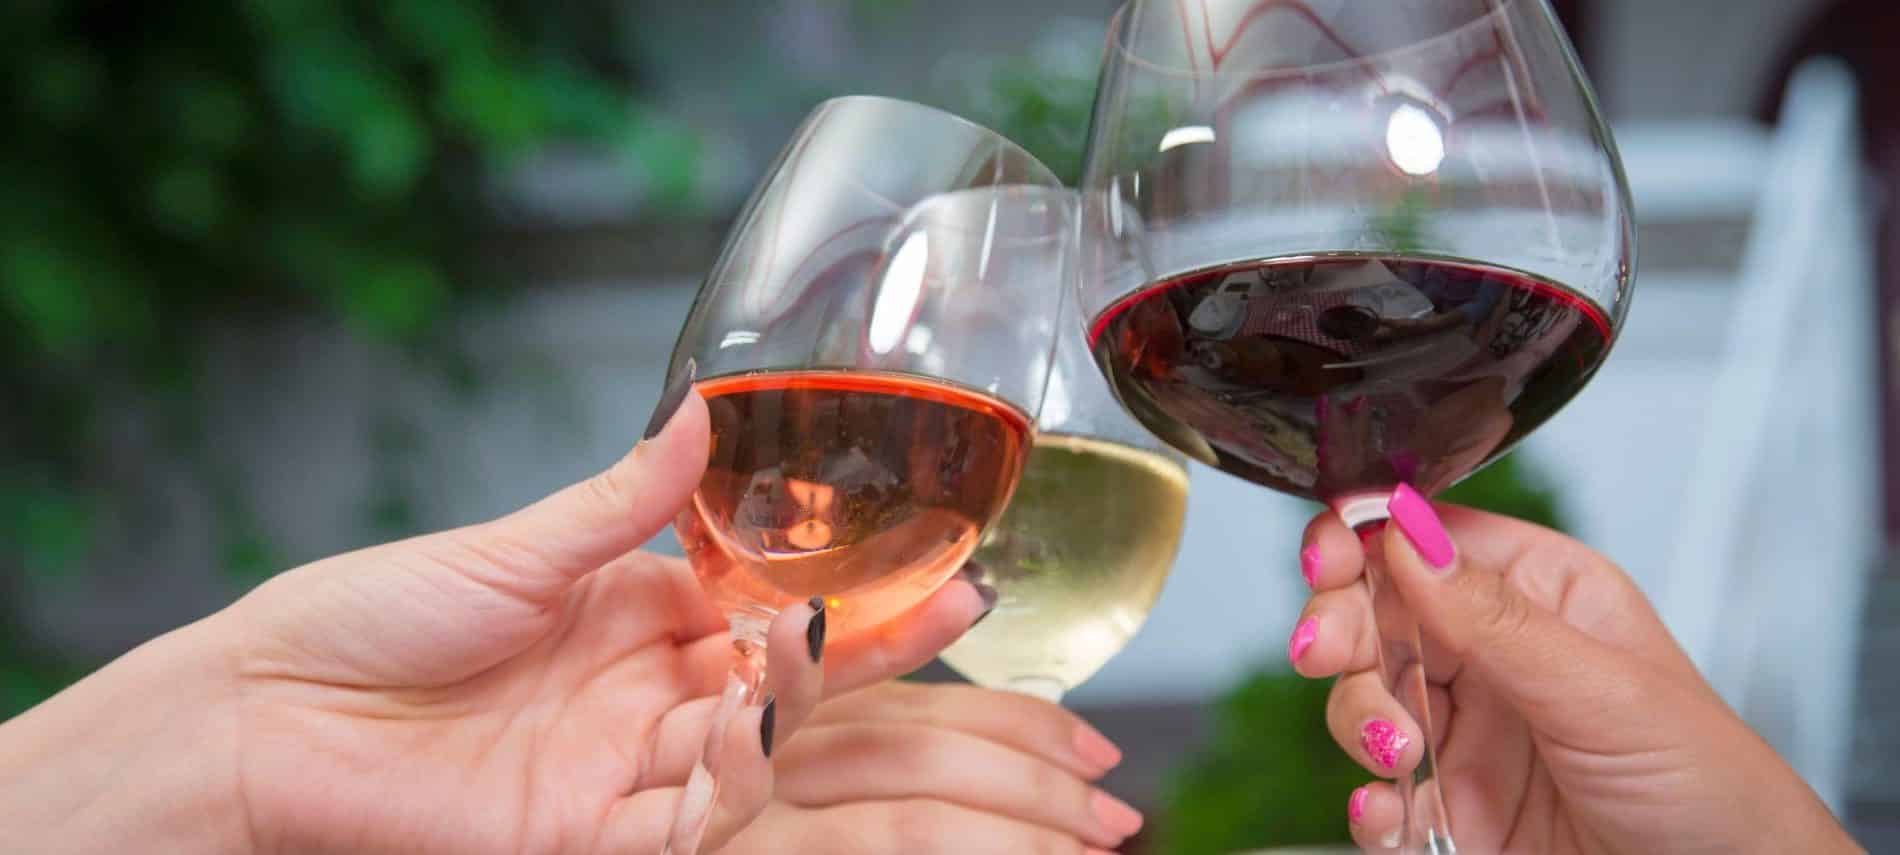 Ladies toasting with wine